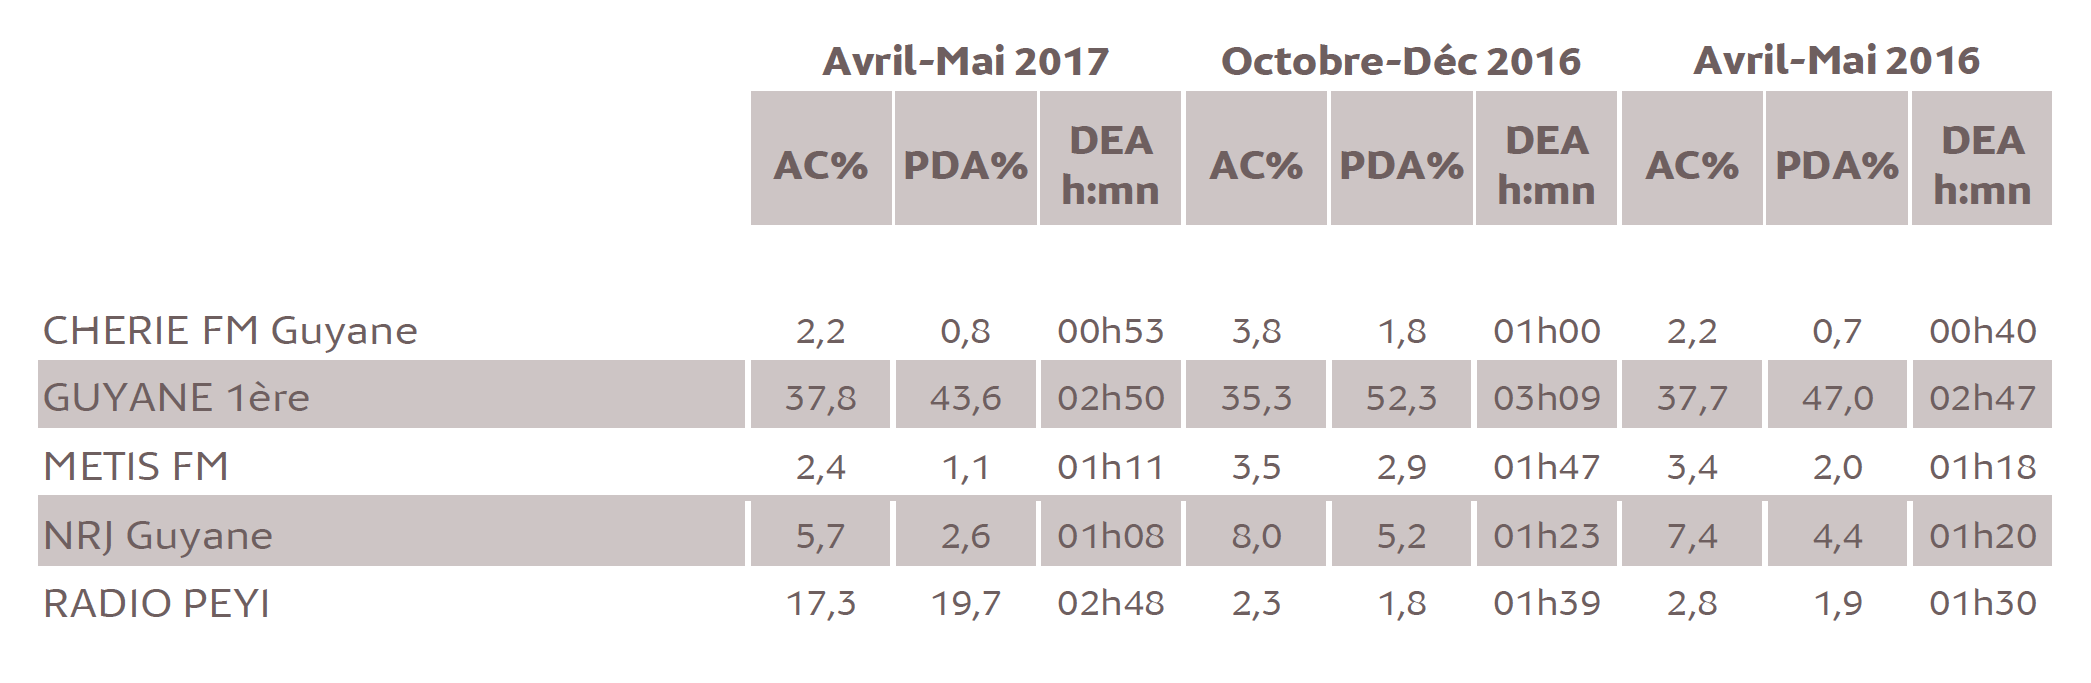 Source : Médiamétrie - Métridom Guyane Avril-Mai 2017 - 13 ans et plus - Copyright Médiamétrie - Tous droits réservés